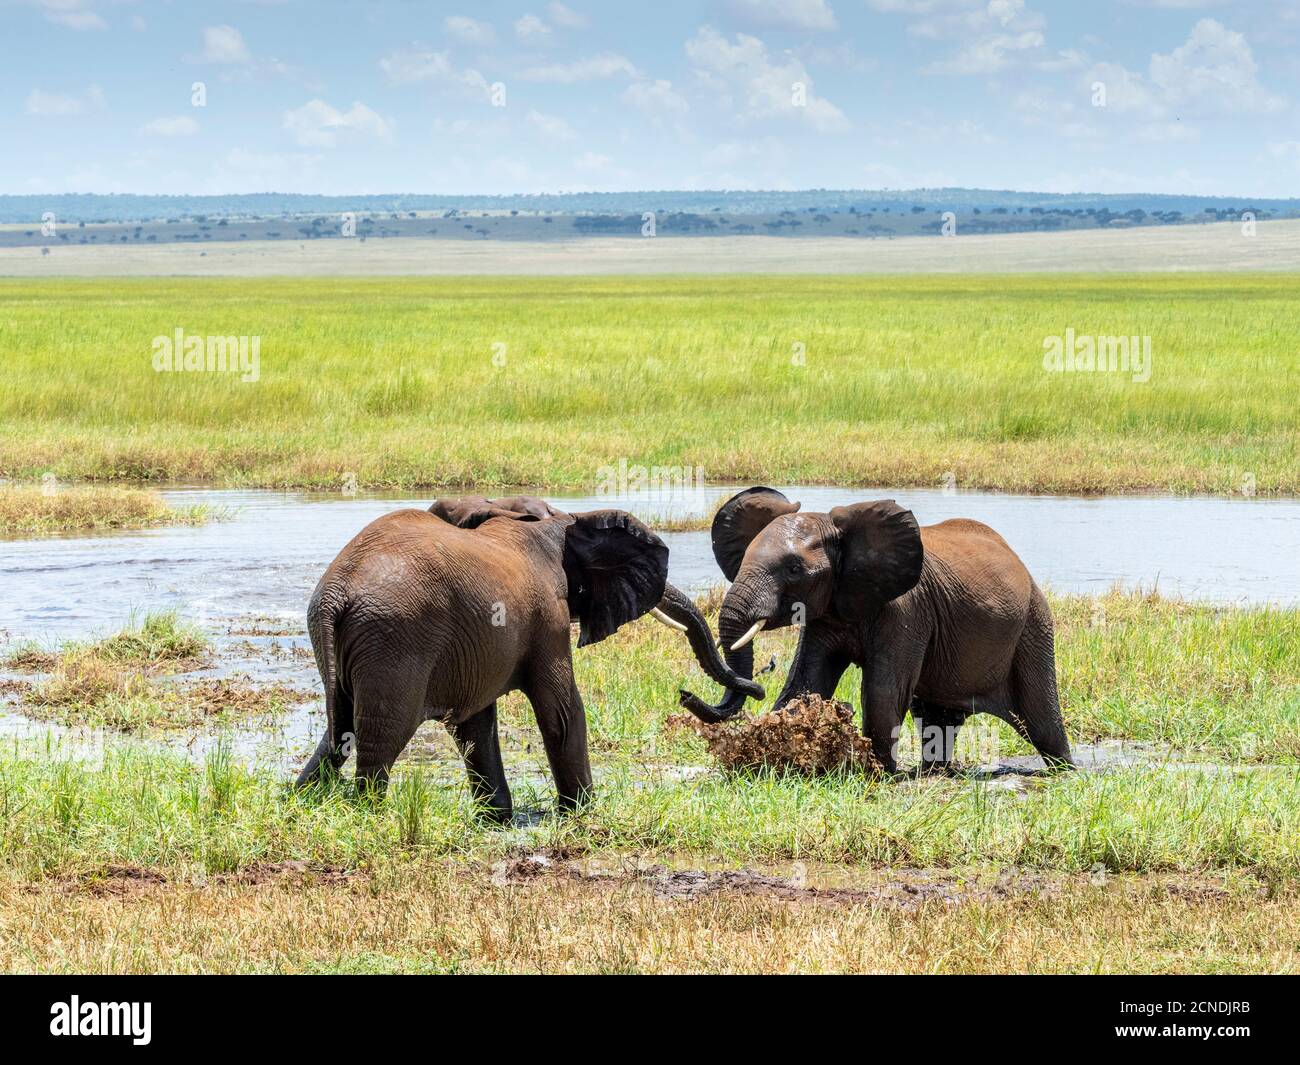 Jeunes éléphants de brousse africains (Loxodonta africana), jouant dans l'eau, Parc national de Tarangire, Tanzanie, Afrique de l'est, Afrique Banque D'Images